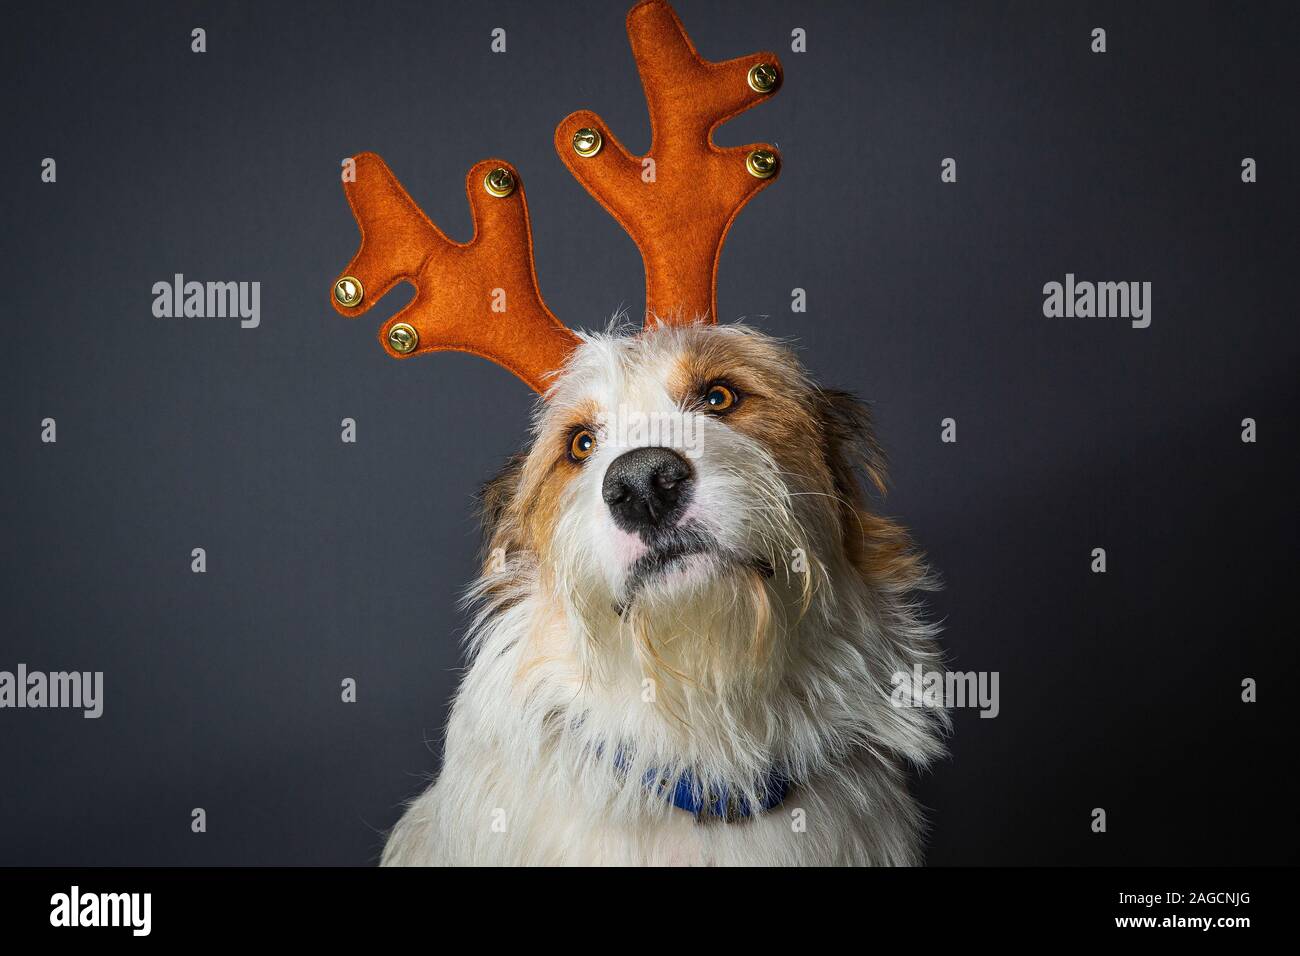 Scruffy chien avec de grands yeux bruns en renne party hat Banque D'Images